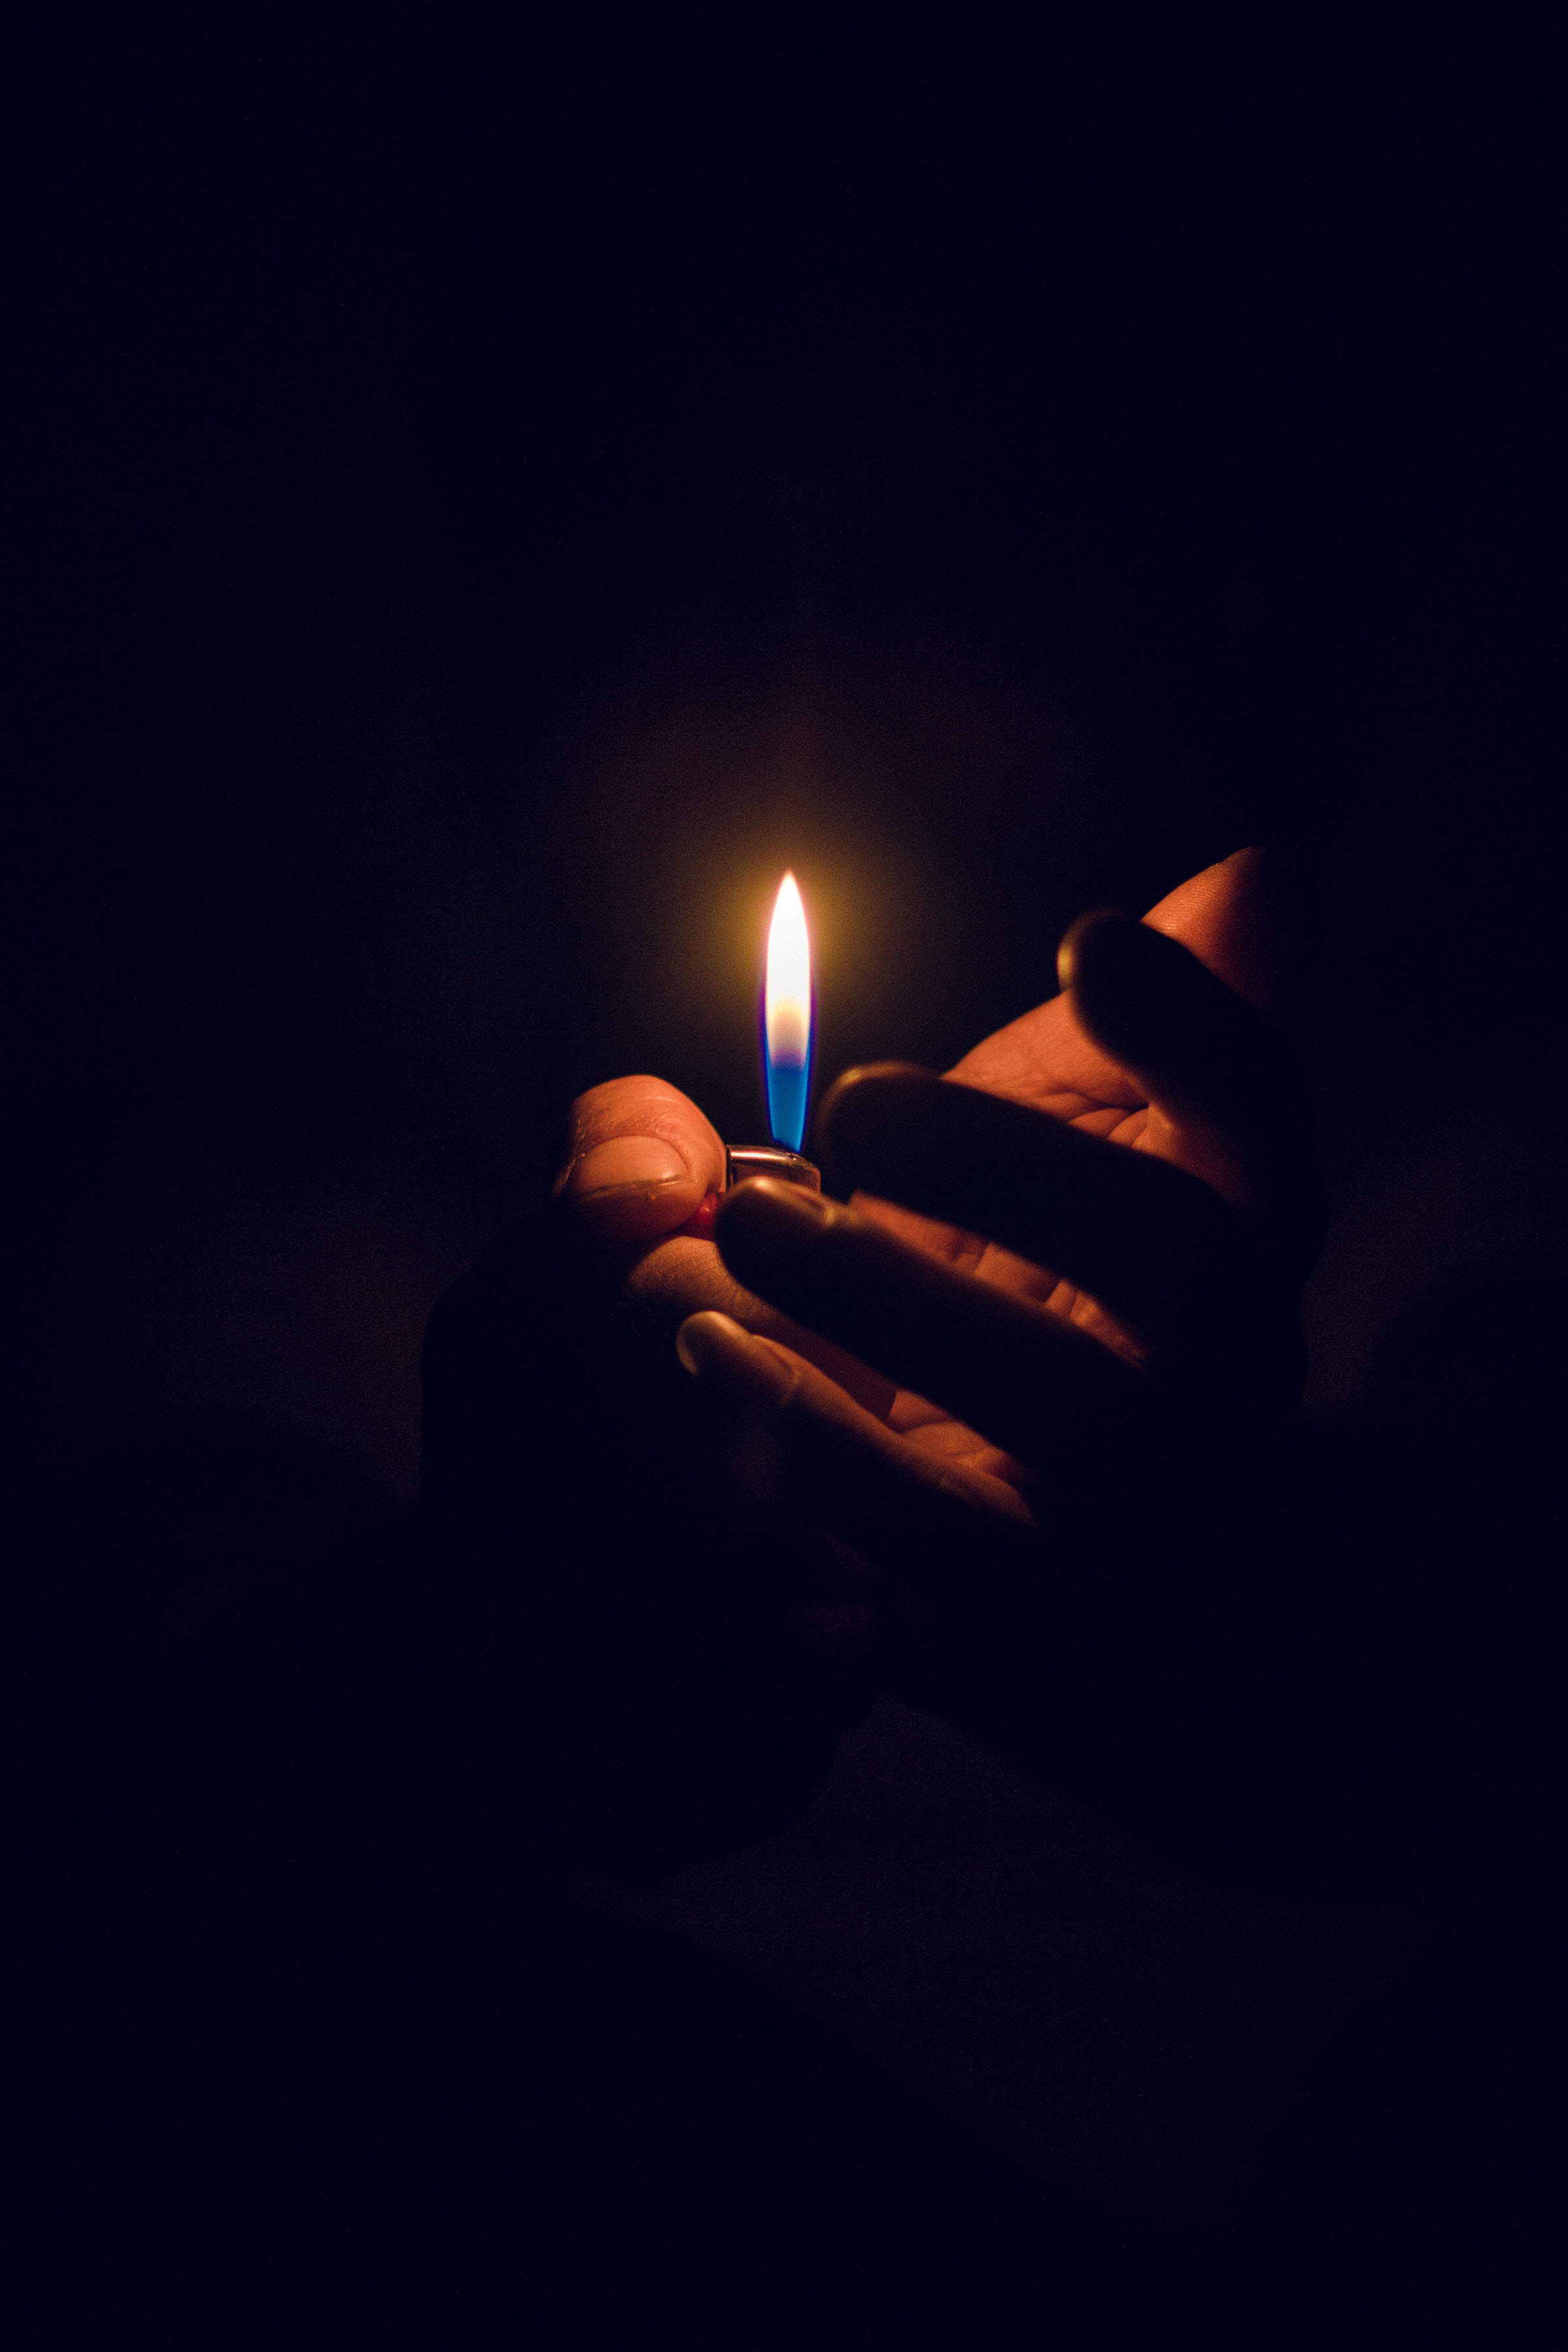 Free HD flame, hand, dark, candle